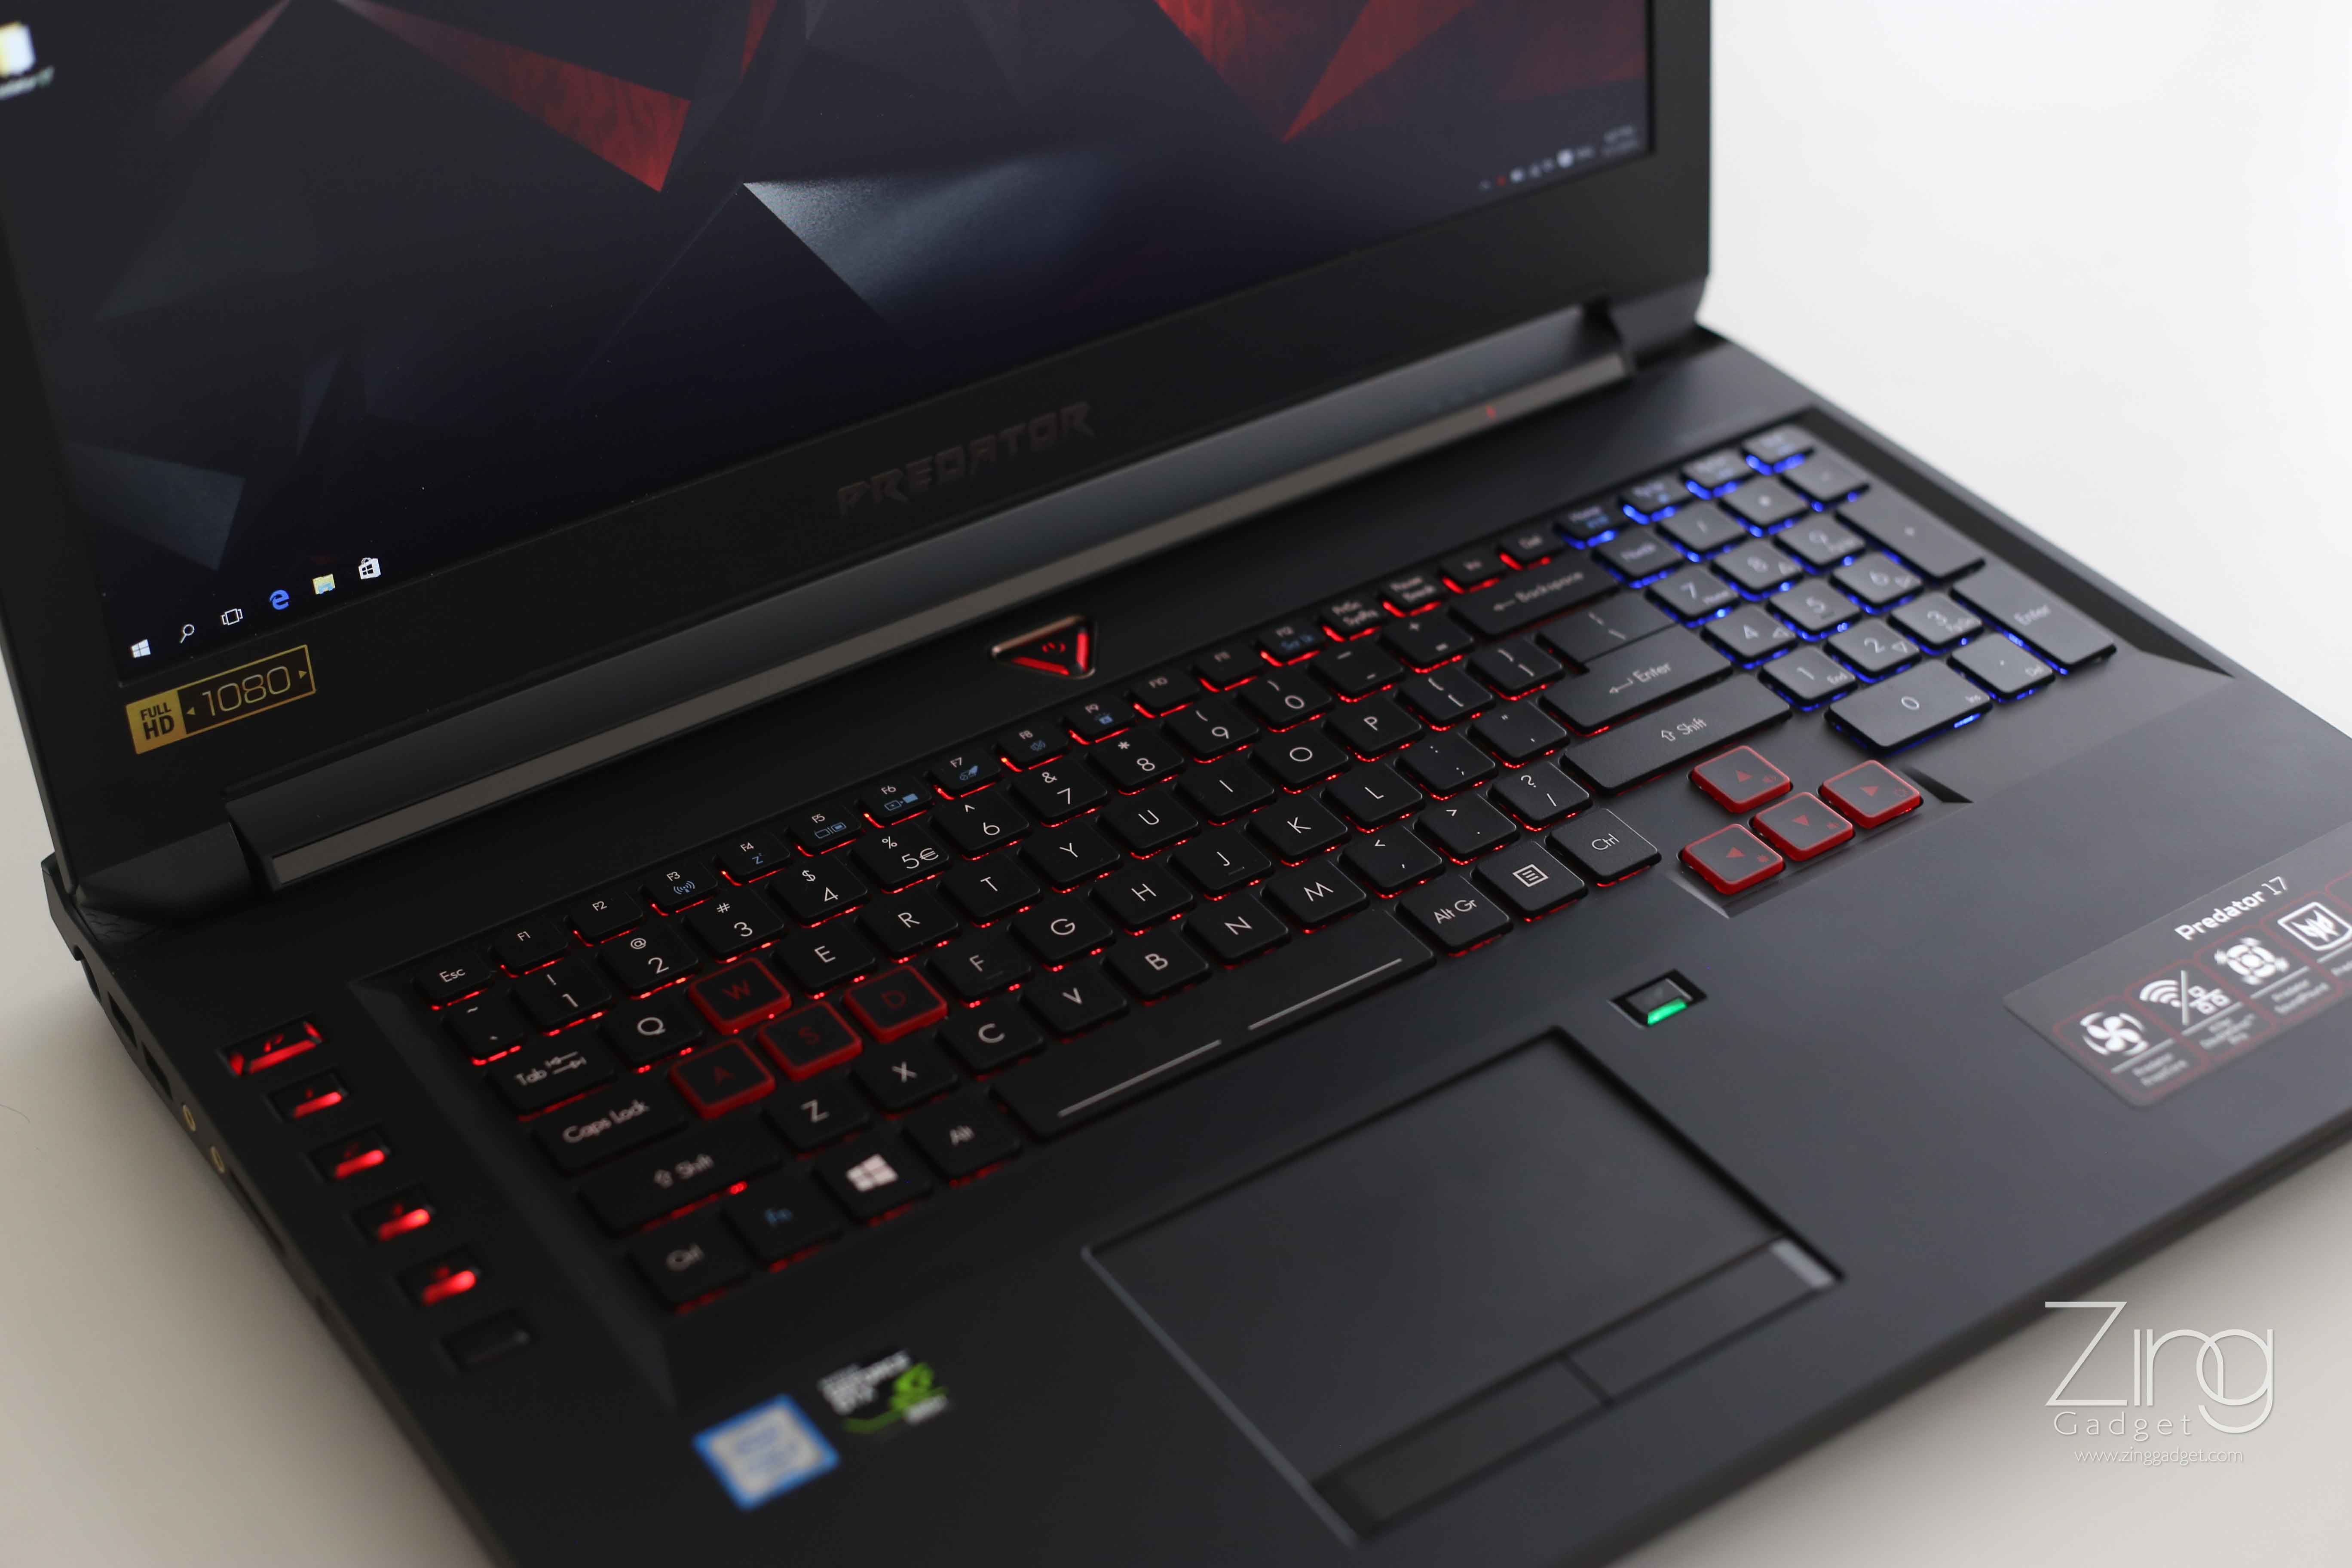 We Tested: Acer Predator 17 Gaming Laptop - Zing Gadget